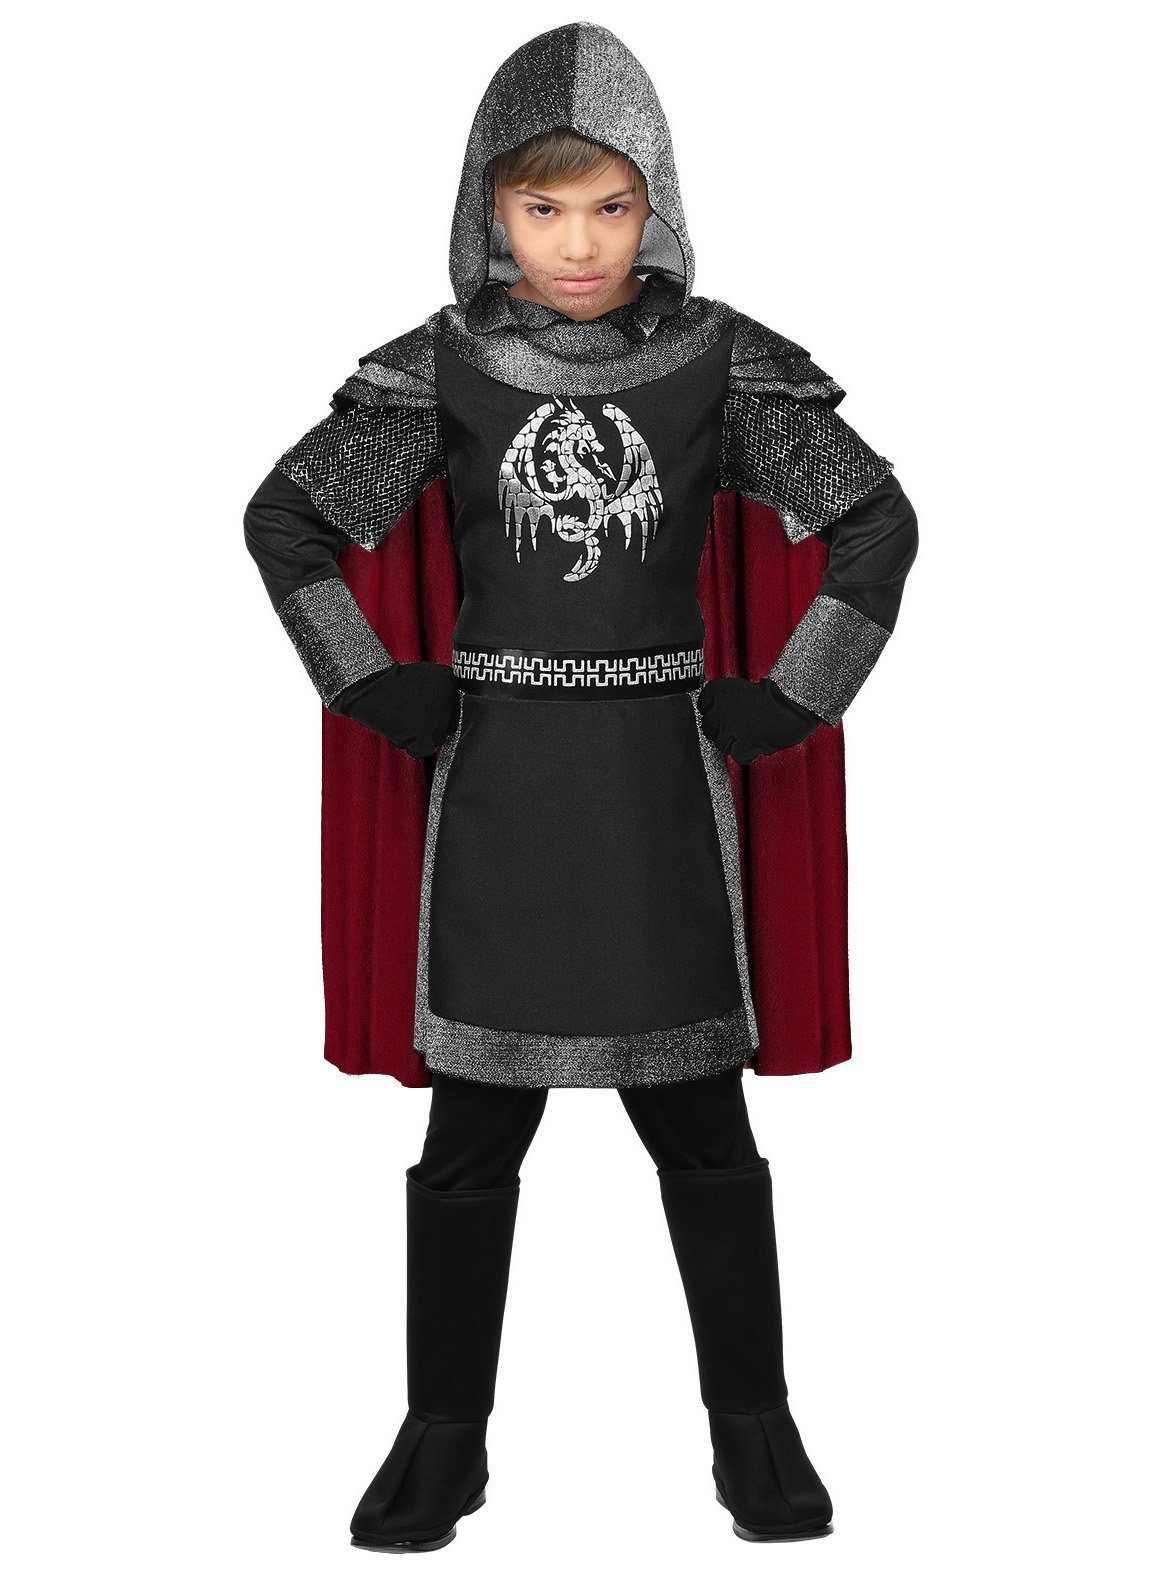 Widdmann Kostüm Schwarzer Ritter Kostüm für Kinder, Mittelalterliches Ritterkostüm für drachenstarke Kerle